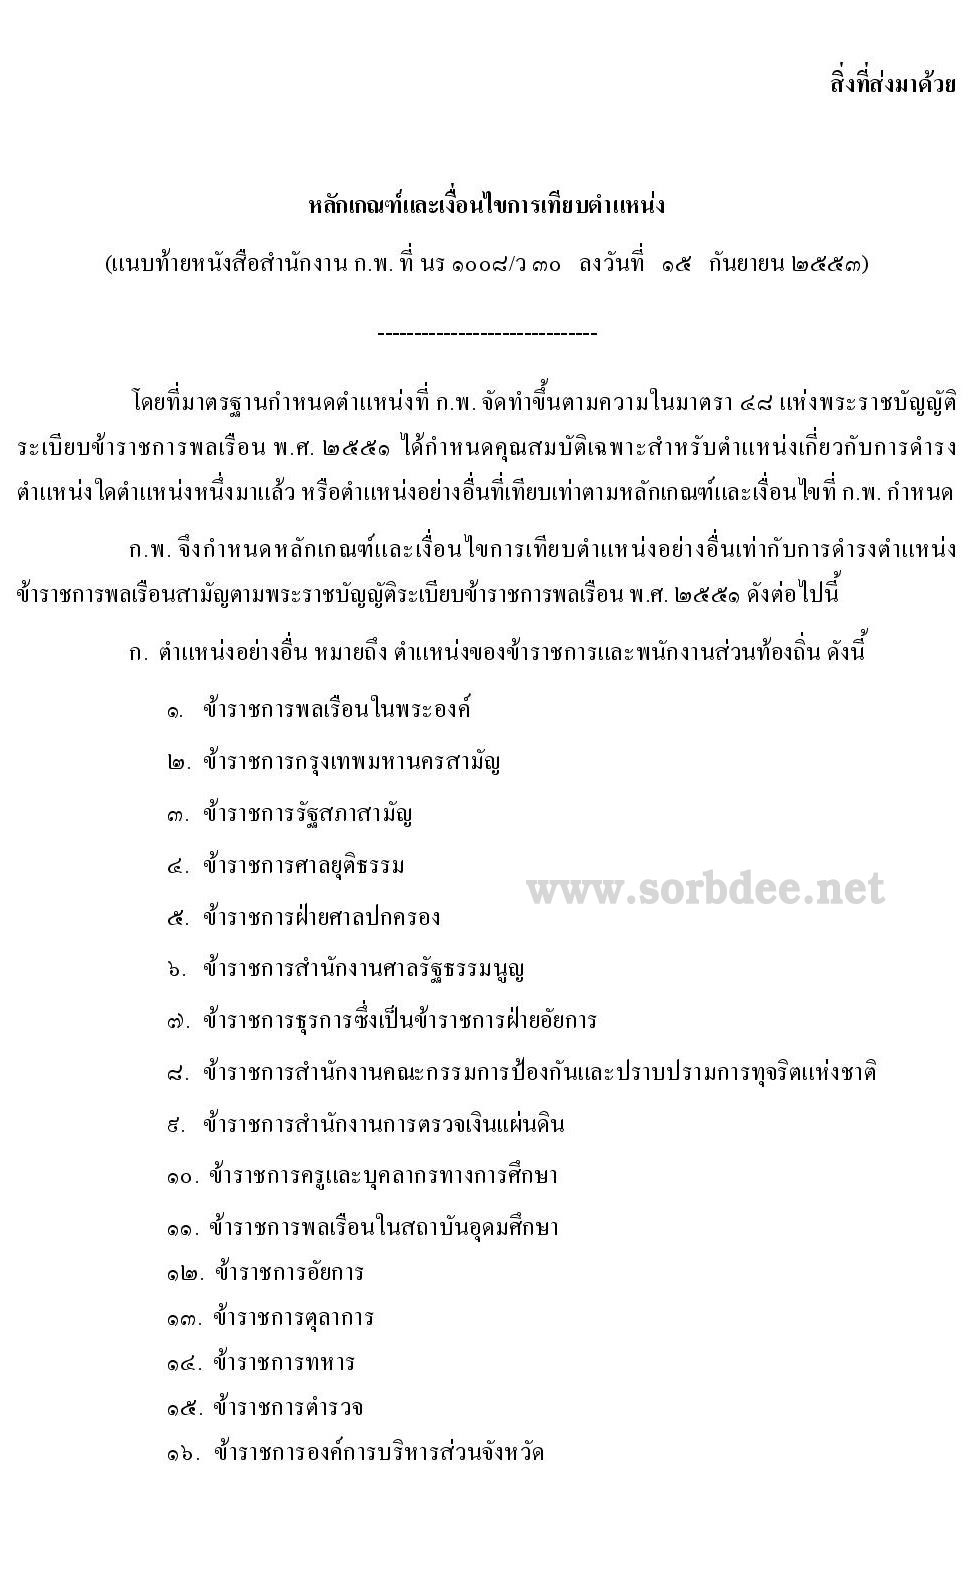 การเทียบตำแหน่งซีของข้าราชการ การเทียบตำแหน่งข้าราชการทุกหน่วยงานในประเทศไทย